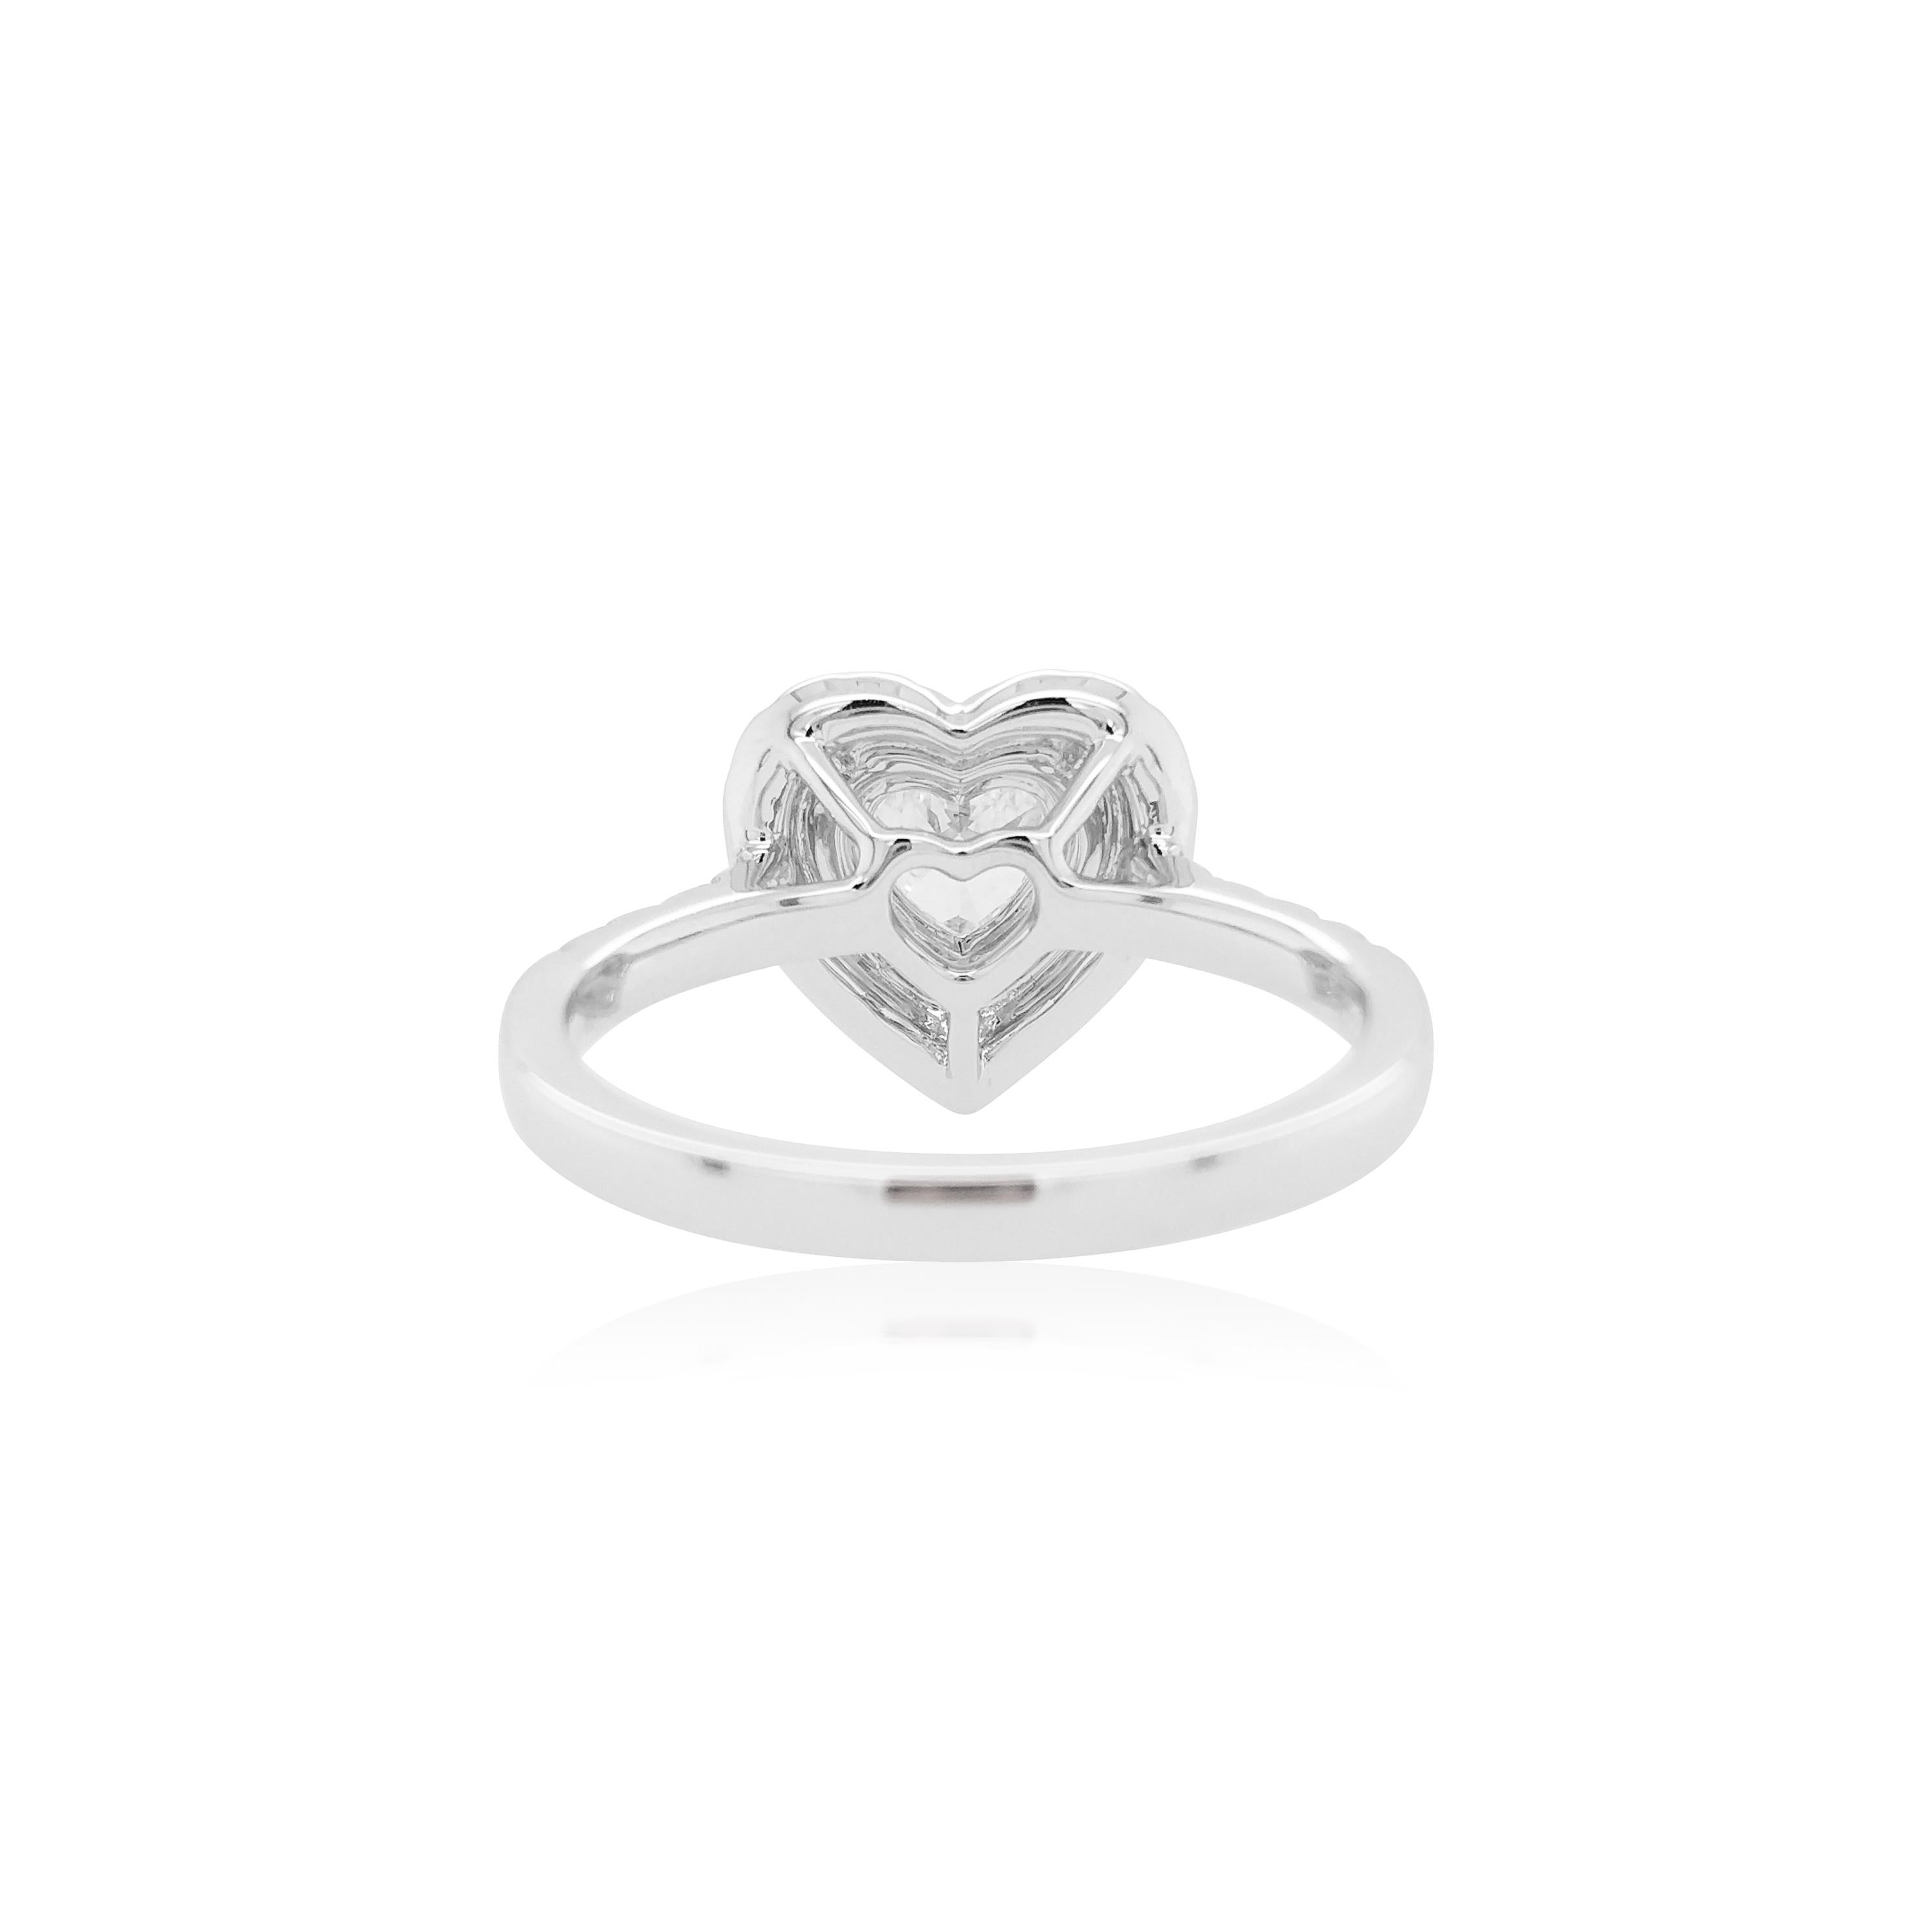 Feiern Sie die Liebe mit unserem Valentine Special Heart Shape White and Pink Diamond Ring. Dieses exquisite Schmuckstück ist ein Symbol für ewige Hingabe. Ein herzförmiger weißer Diamant wird von zarten rosa Argyle-Diamanten umrahmt. Mit Präzision